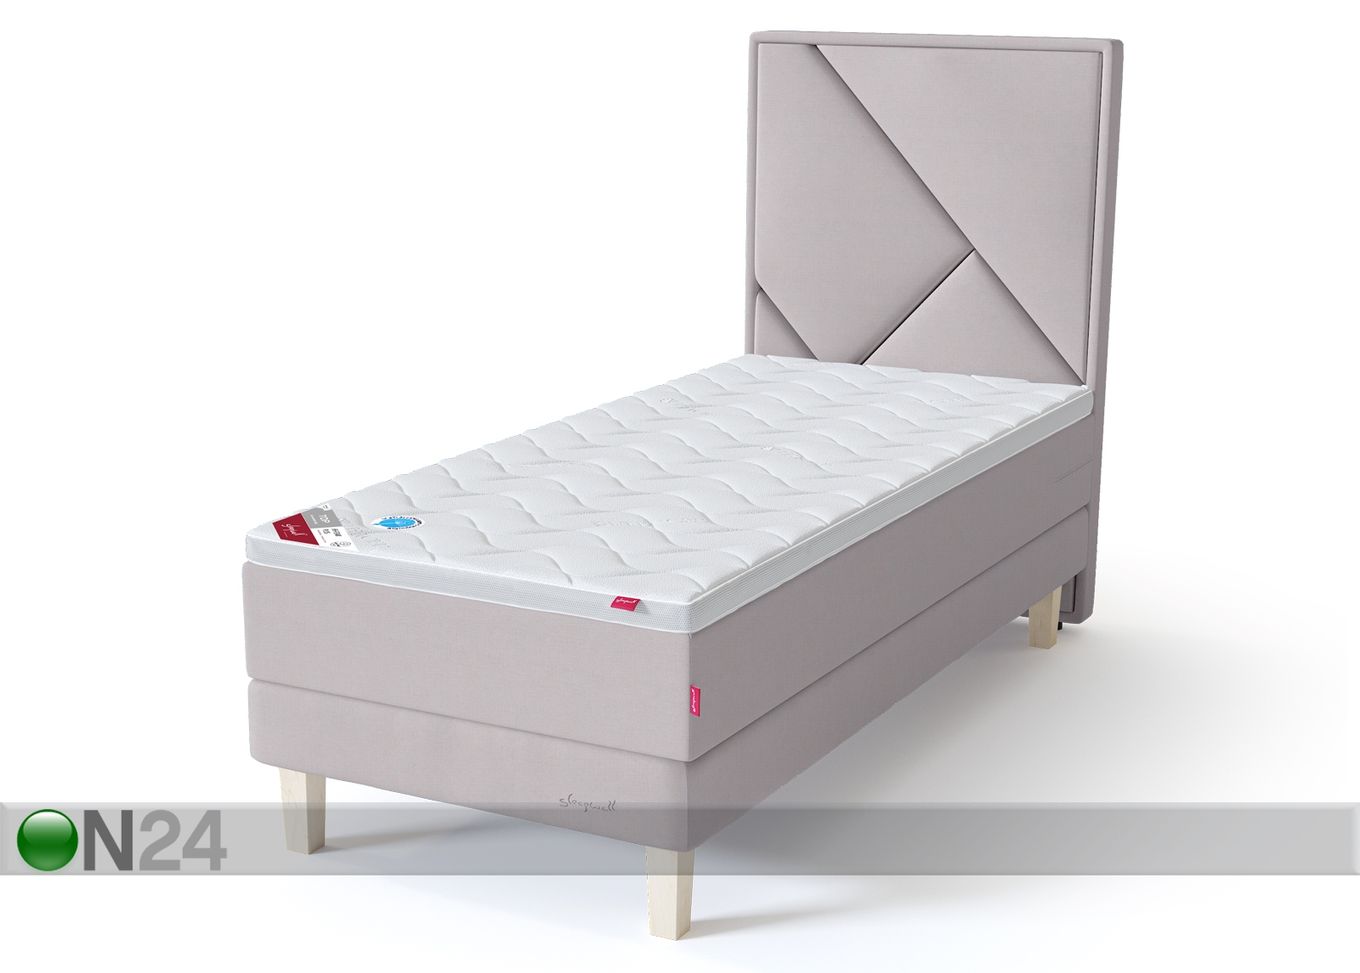 Sleepwell Red континентальная кровать на раме жёсткая 90x200 cm увеличить